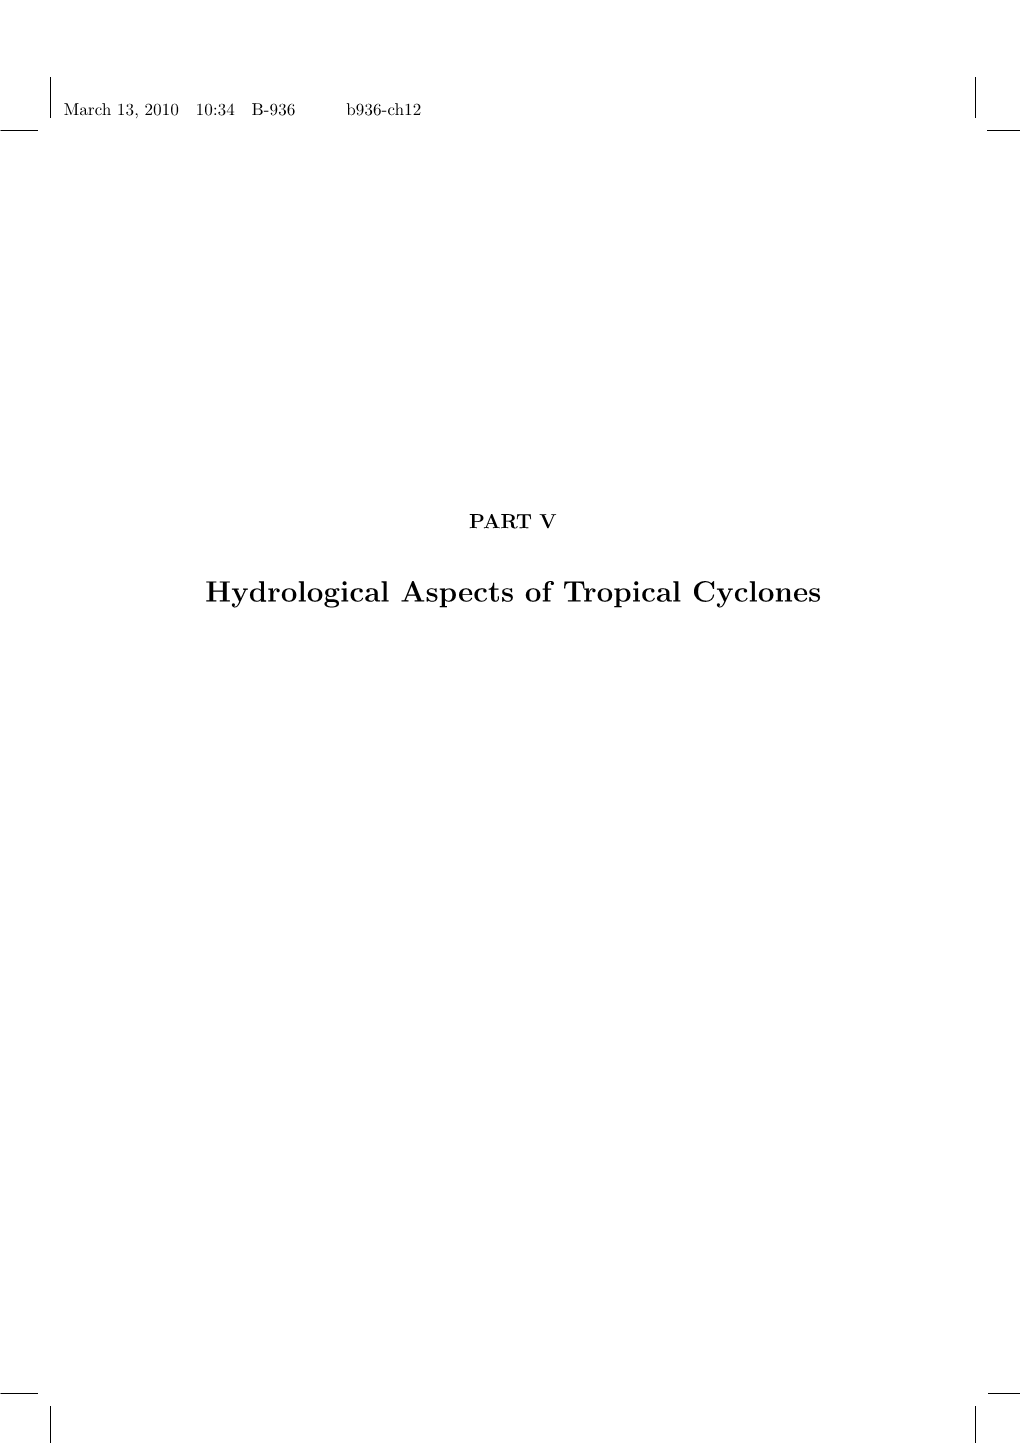 Hydrological Aspects of Tropical Cyclones March 13, 2010 10:34 B-936 B936-Ch12 March 13, 2010 10:34 B-936 B936-Ch12